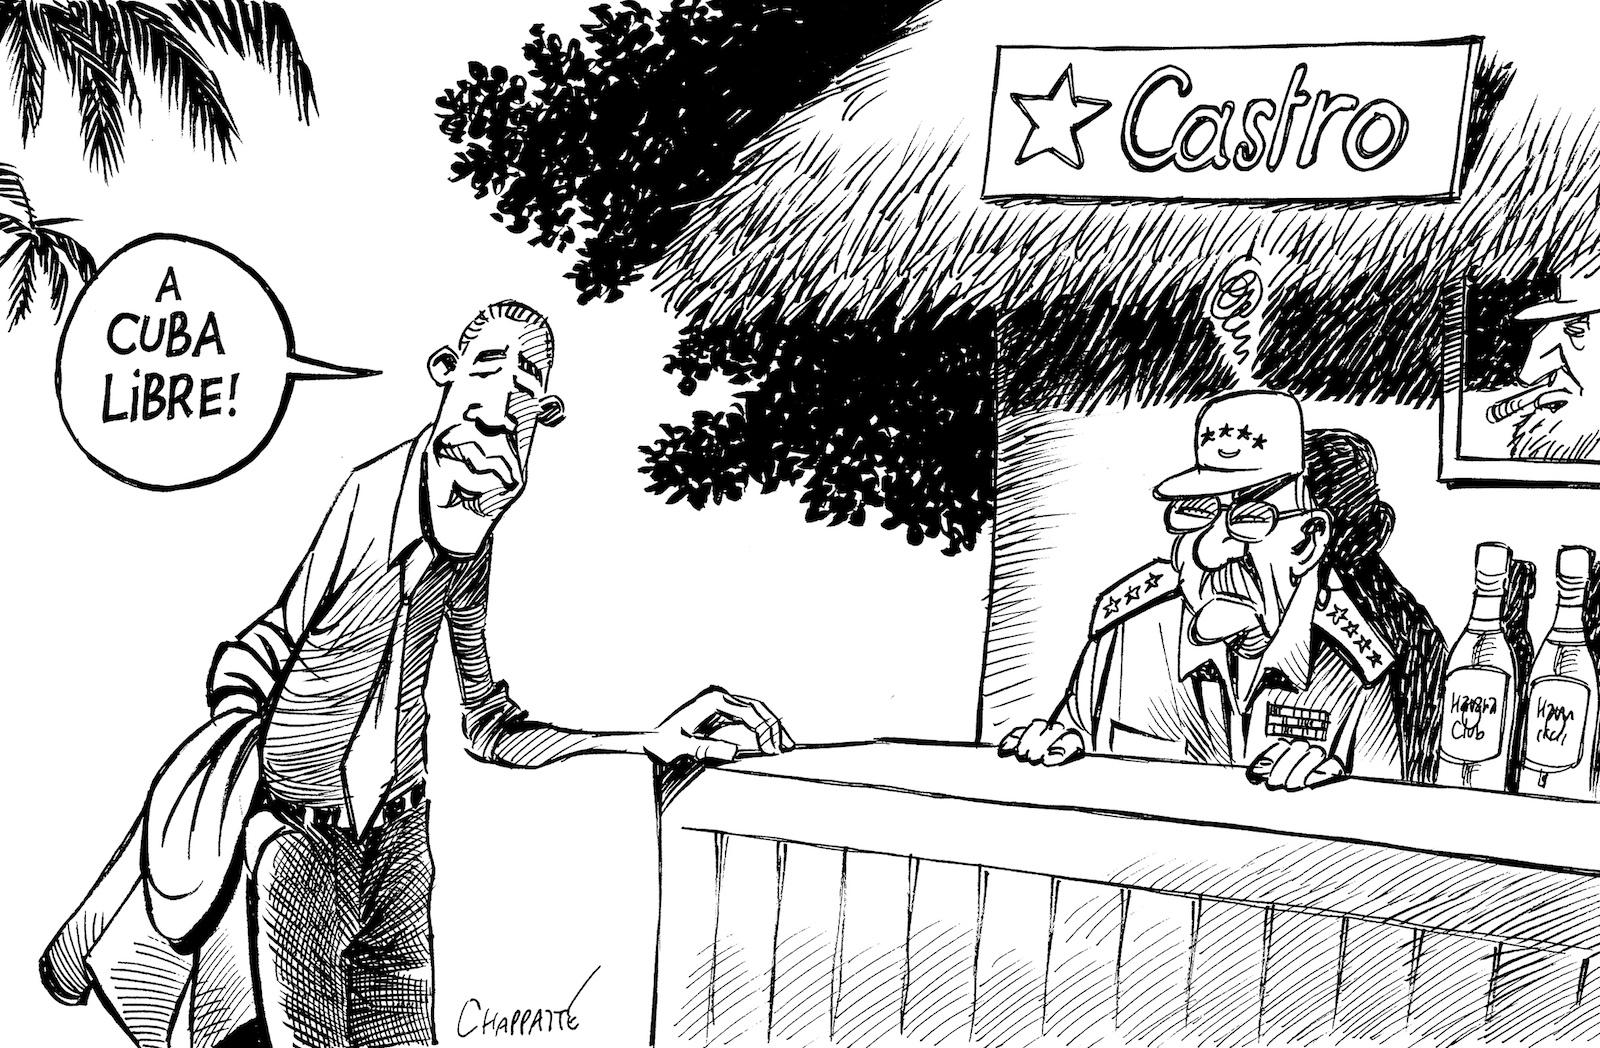 Obama in Cuba